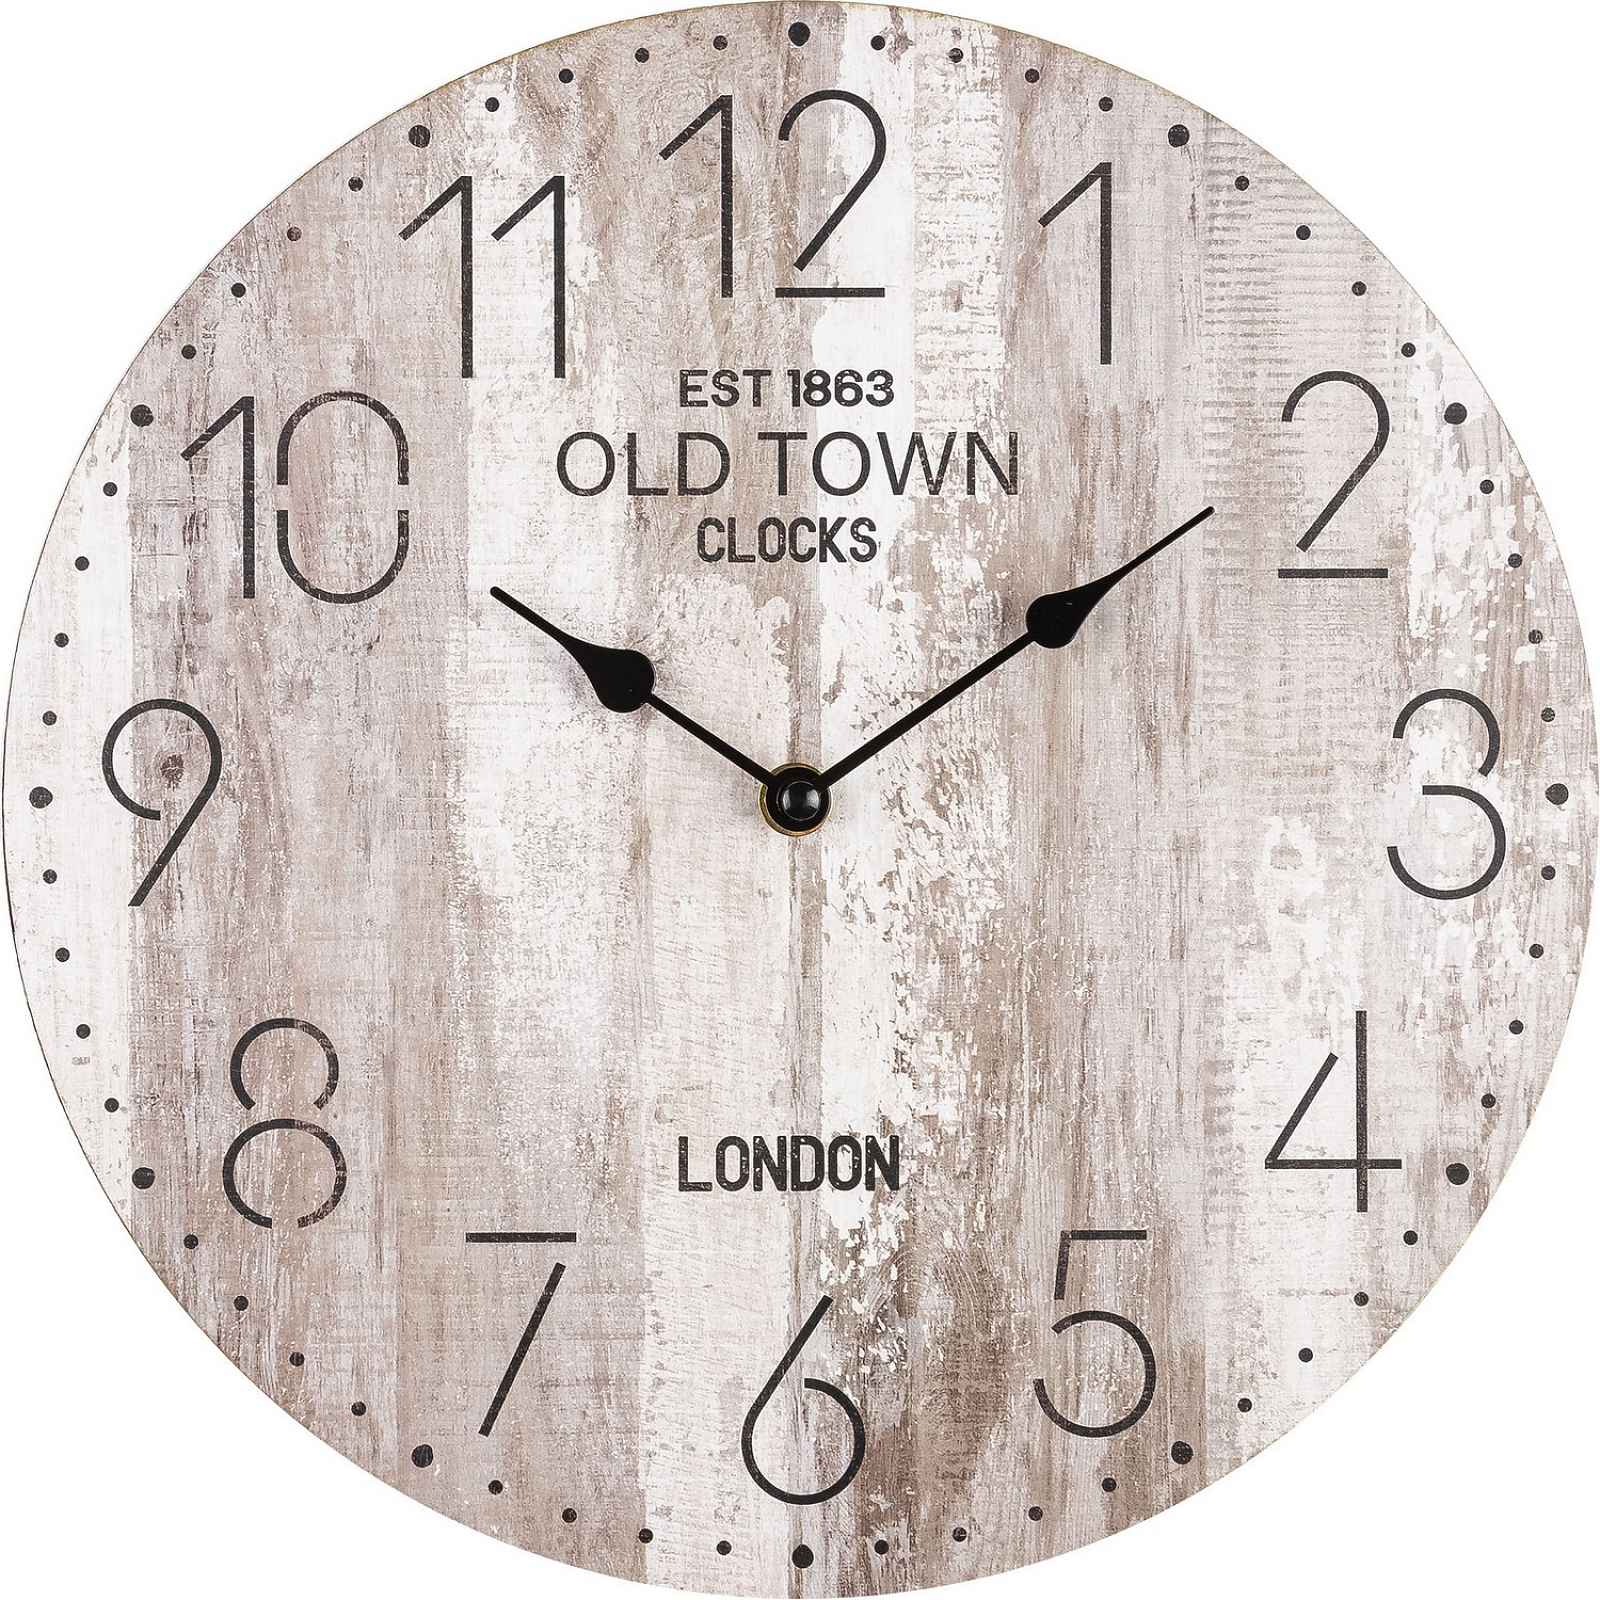 Nástěnné hodiny Old Town, 30 cm